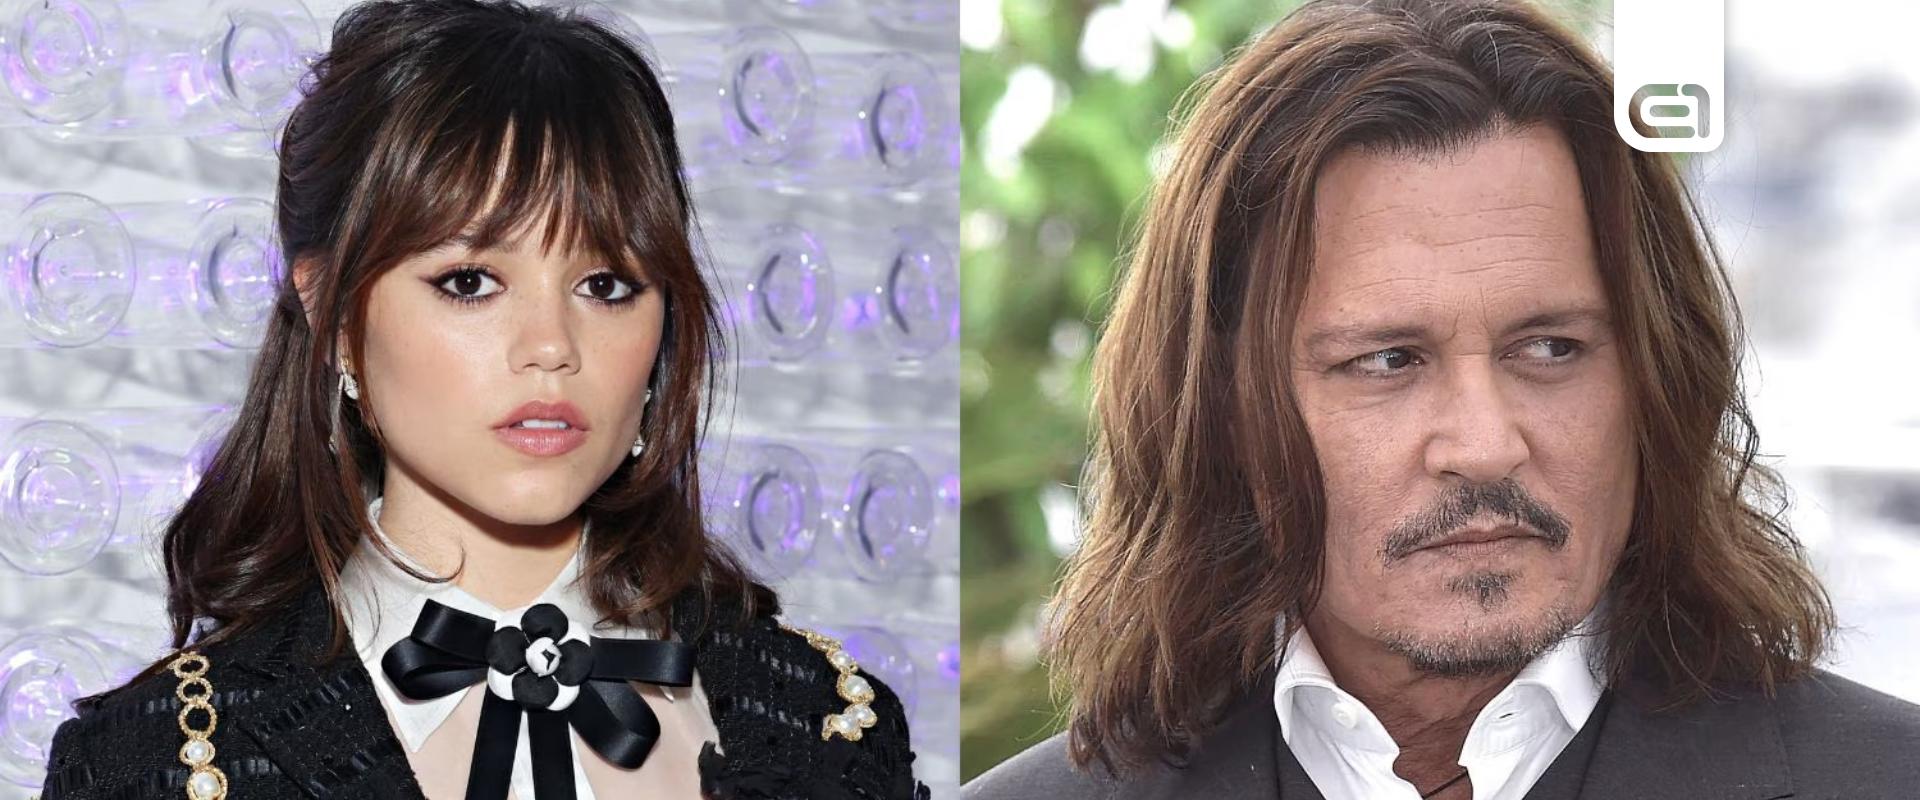 Szétbombázta az internetet, miszerint Jenna Ortega és Johnny Depp egy párt alkotnak